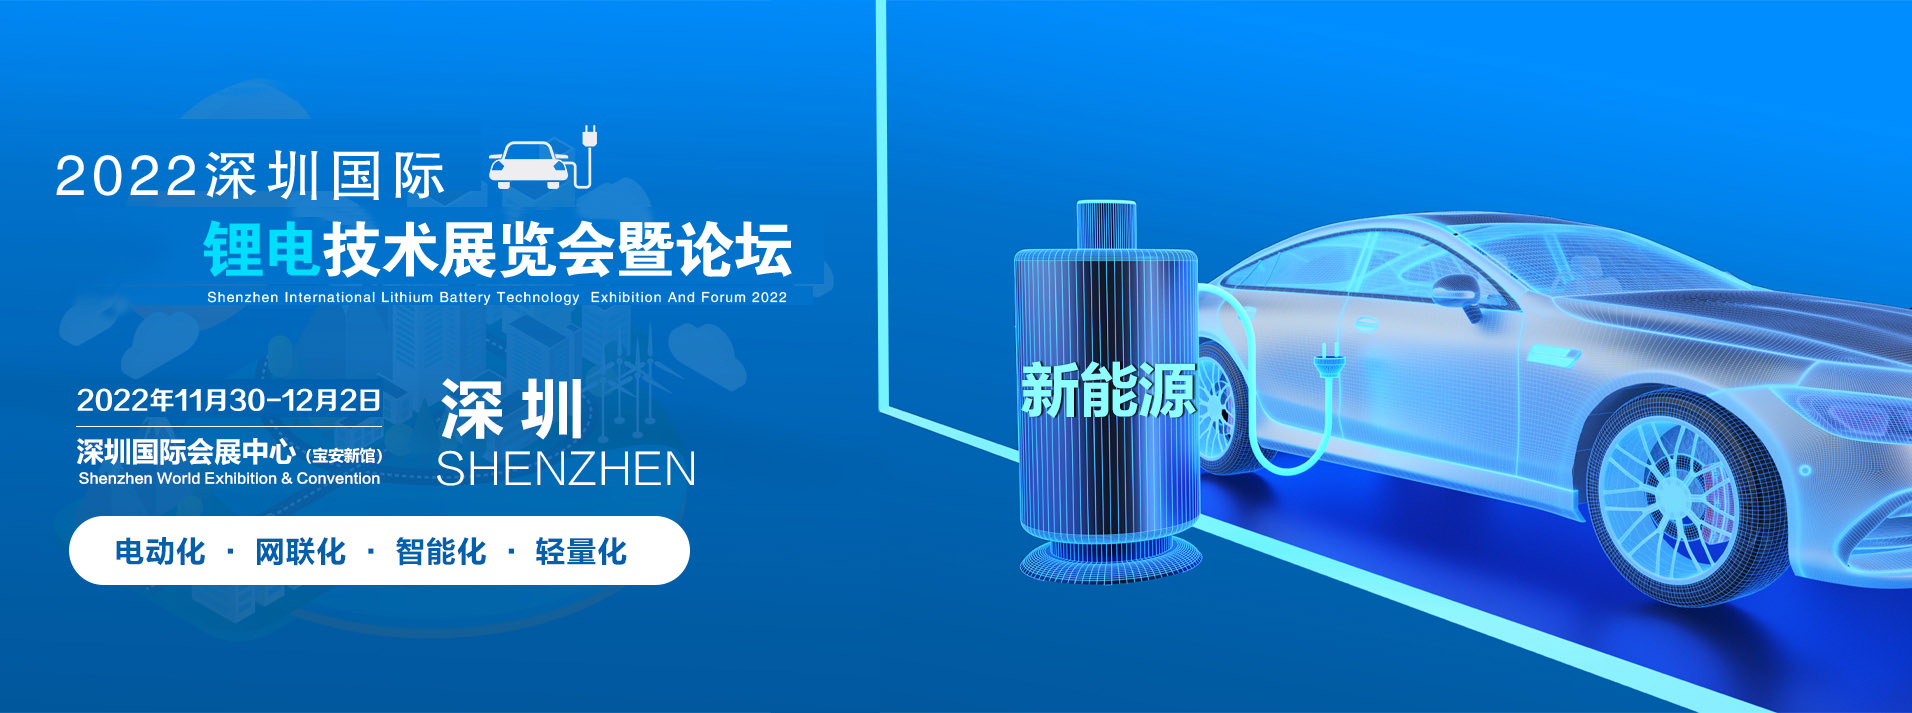 2022中国(深圳)锂电池技术大会暨展览会